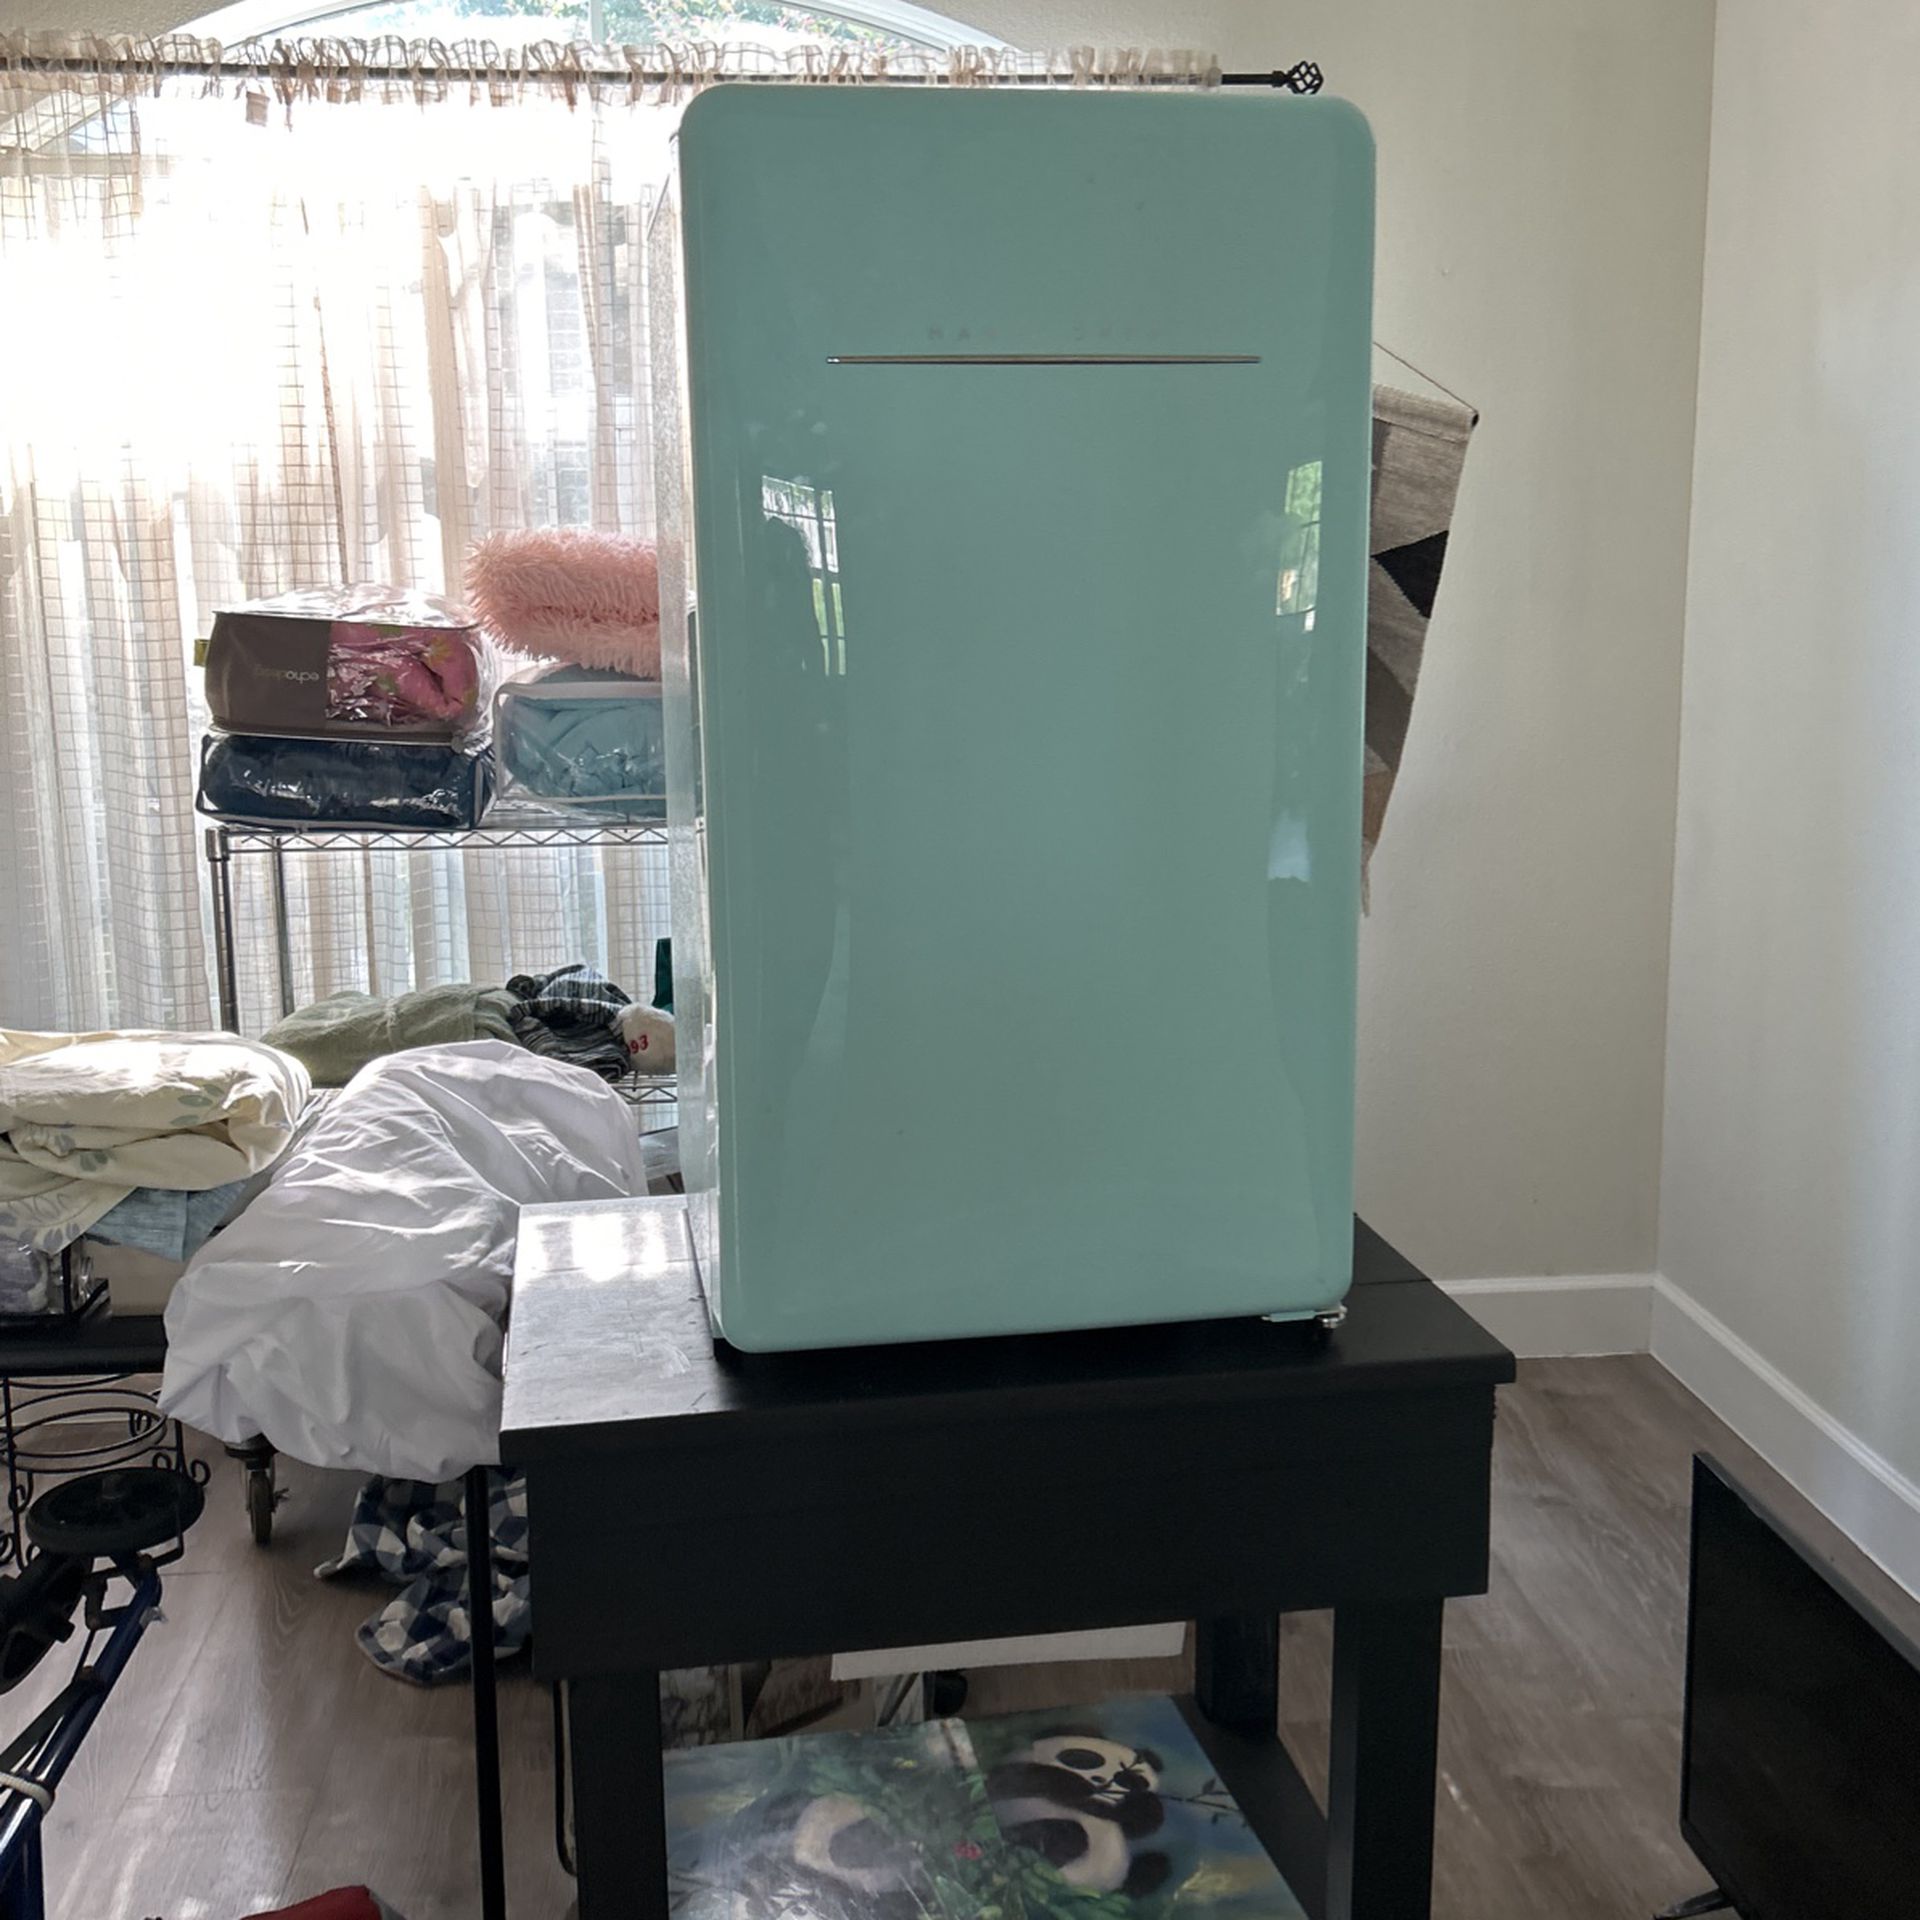 Small Refrigerador Nice Condition 